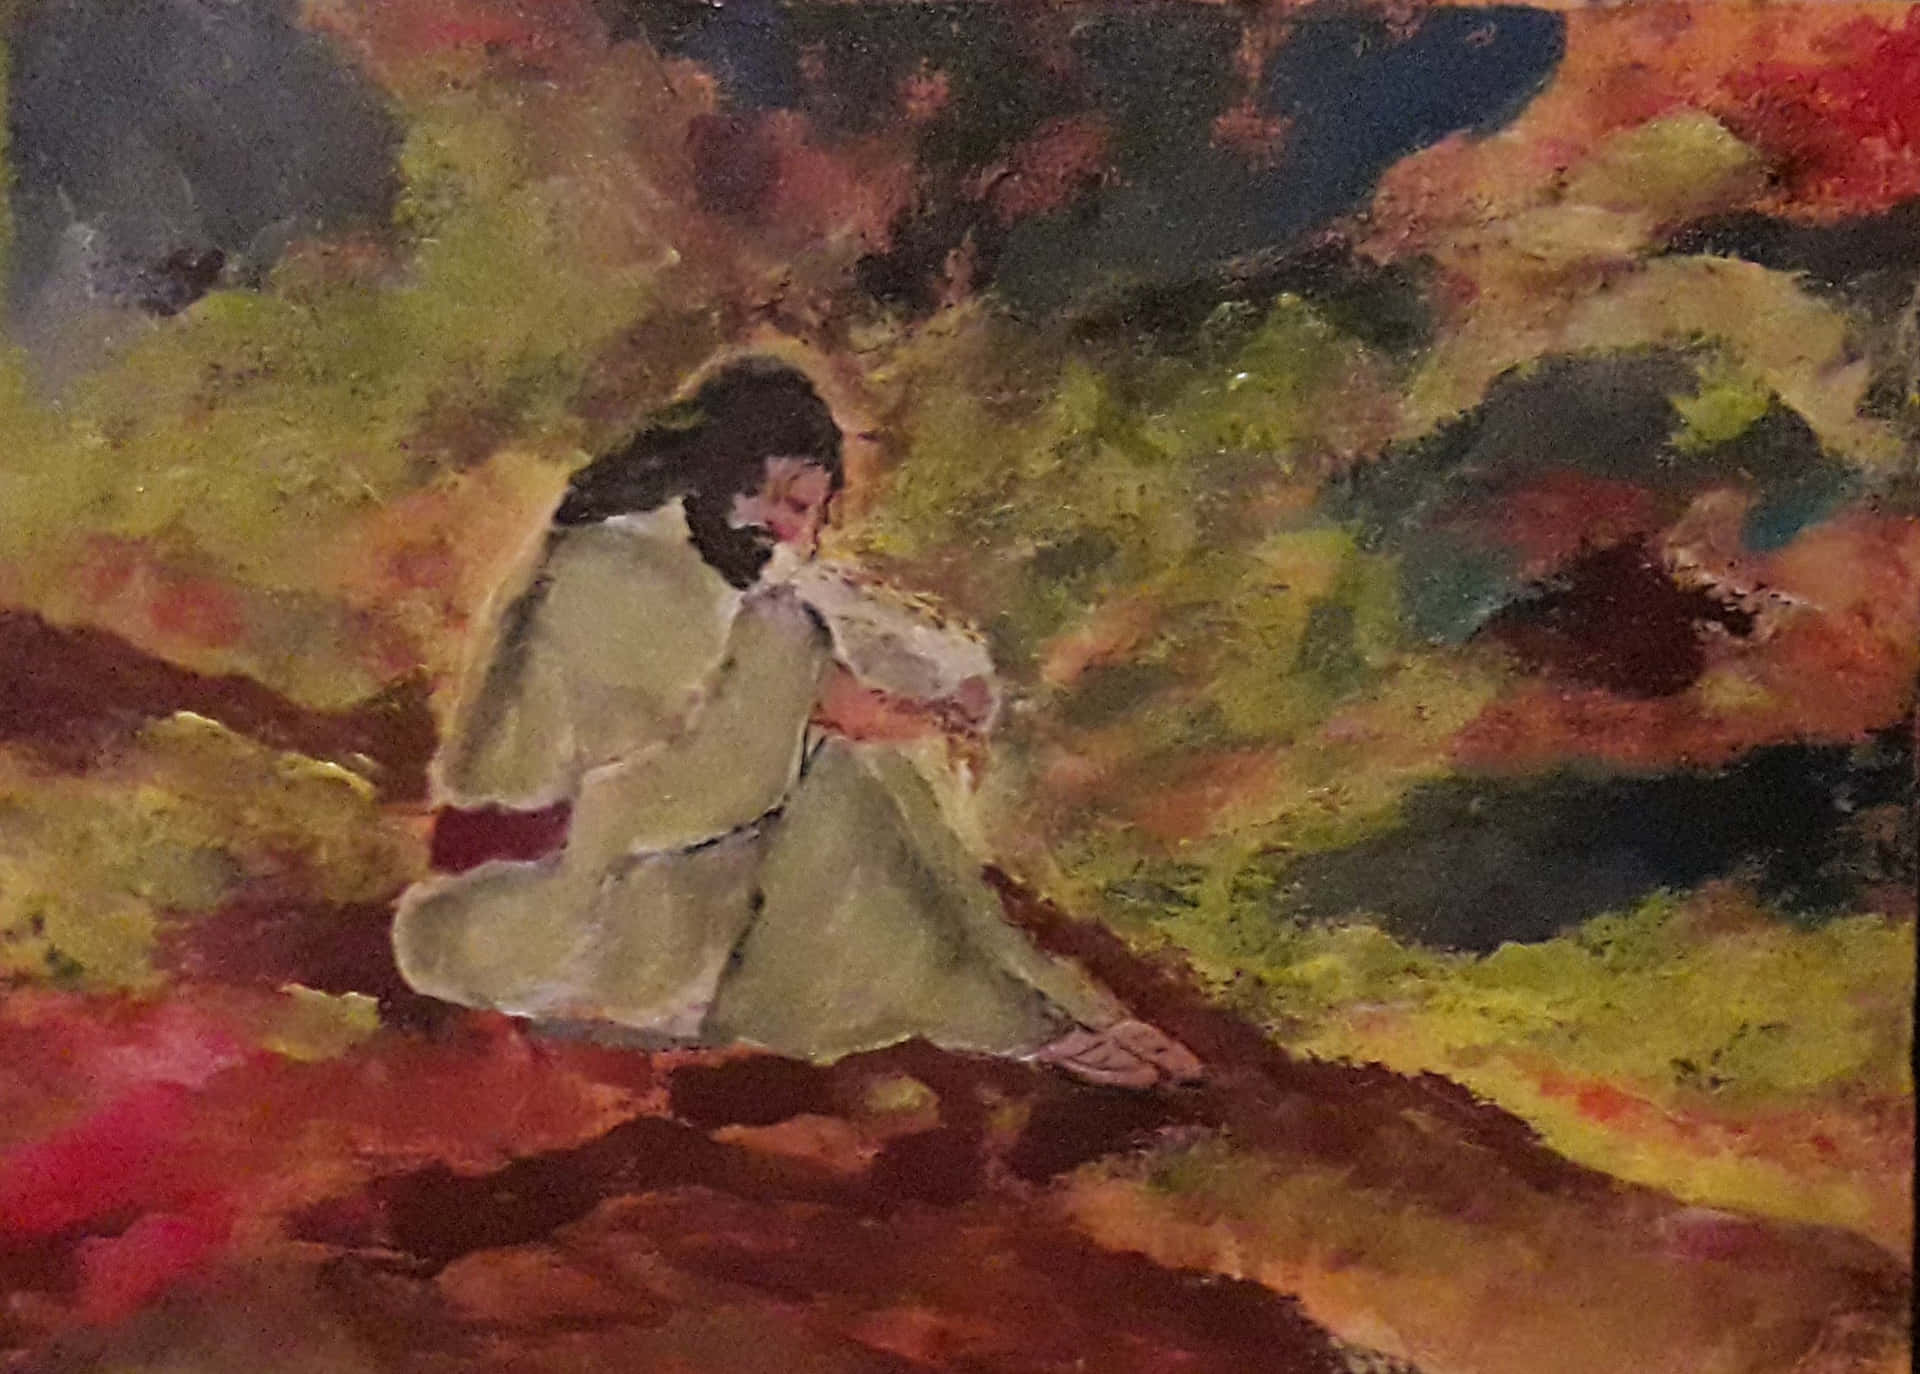 Jesusbeder I Getsemane Haven. Wallpaper